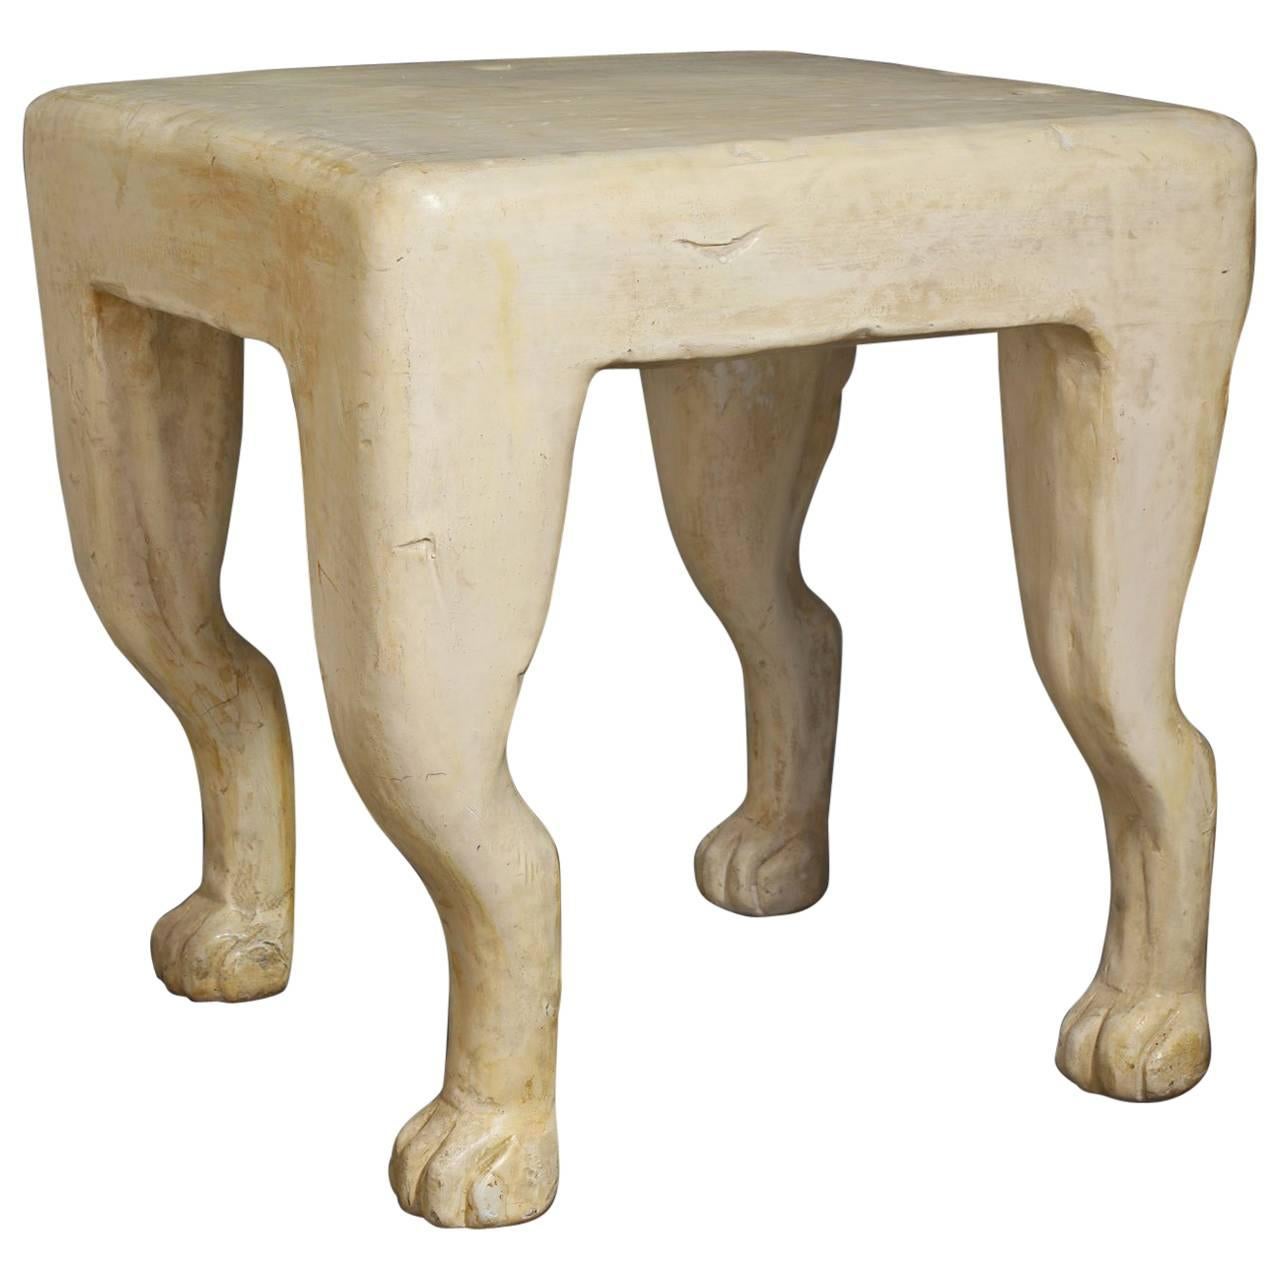 John Dickinson "Etruscan" Plaster Table